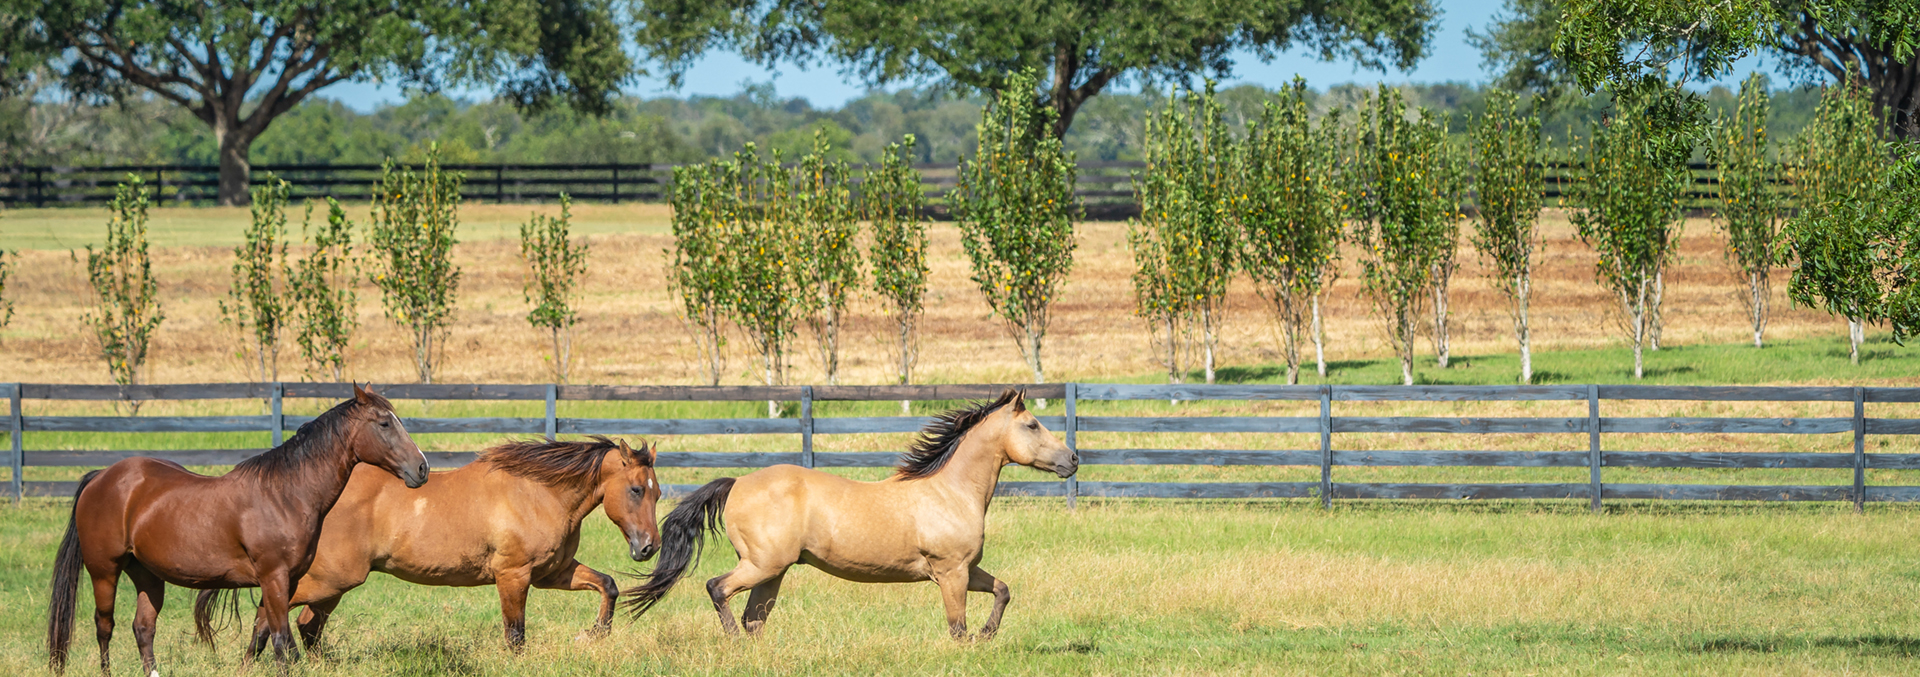 texas equestrian ranch for sale dos brisas